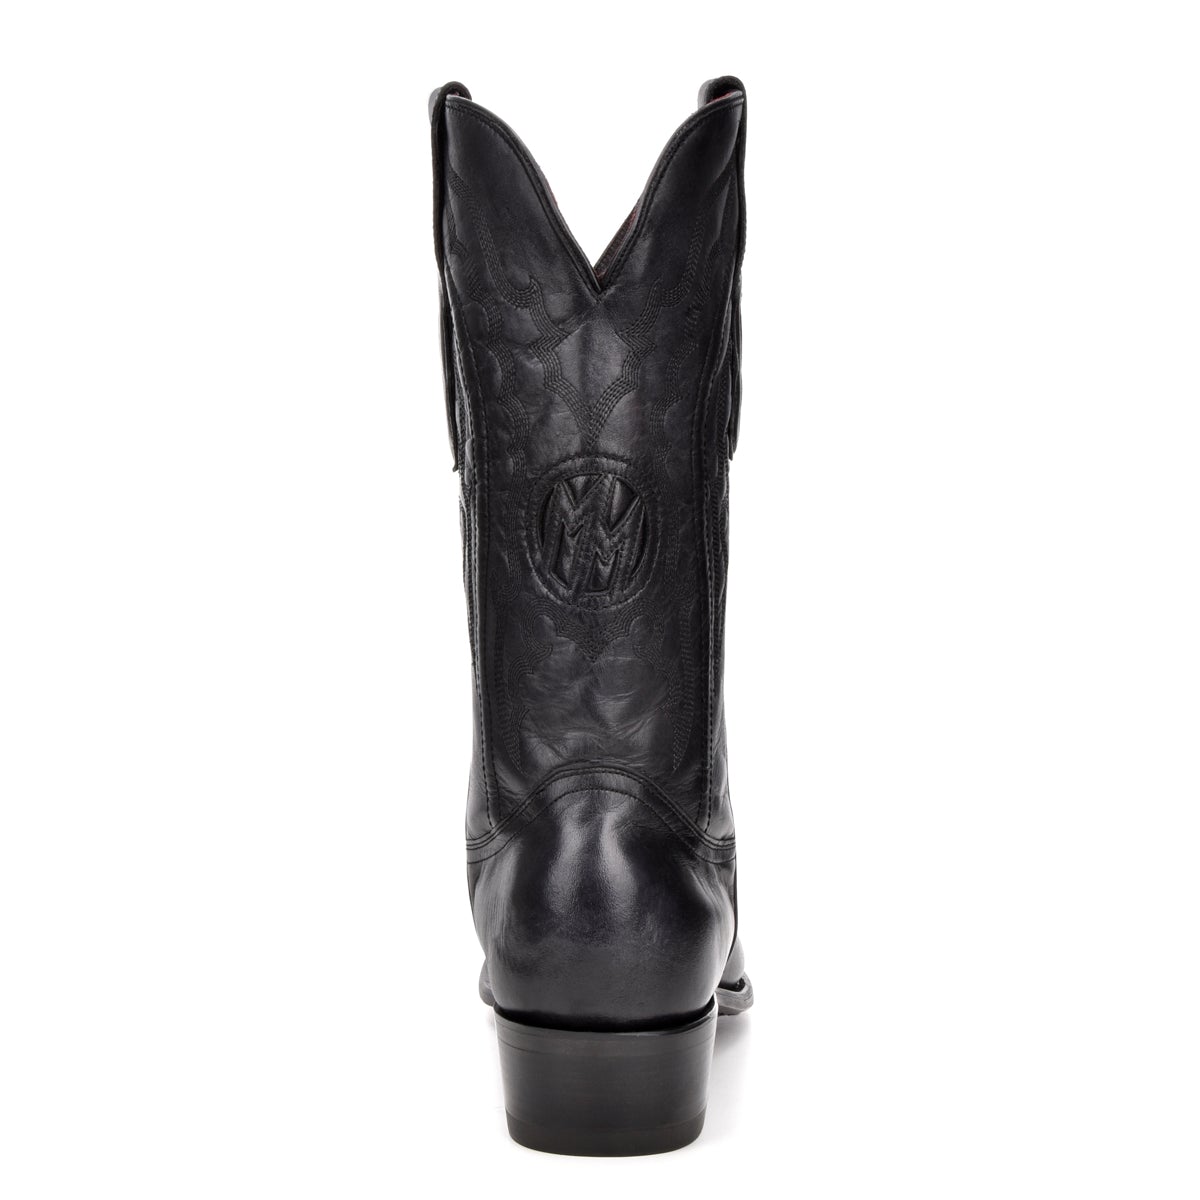 M2154 - Montana black dress cowboy cowhide boots for men-Kuet.us